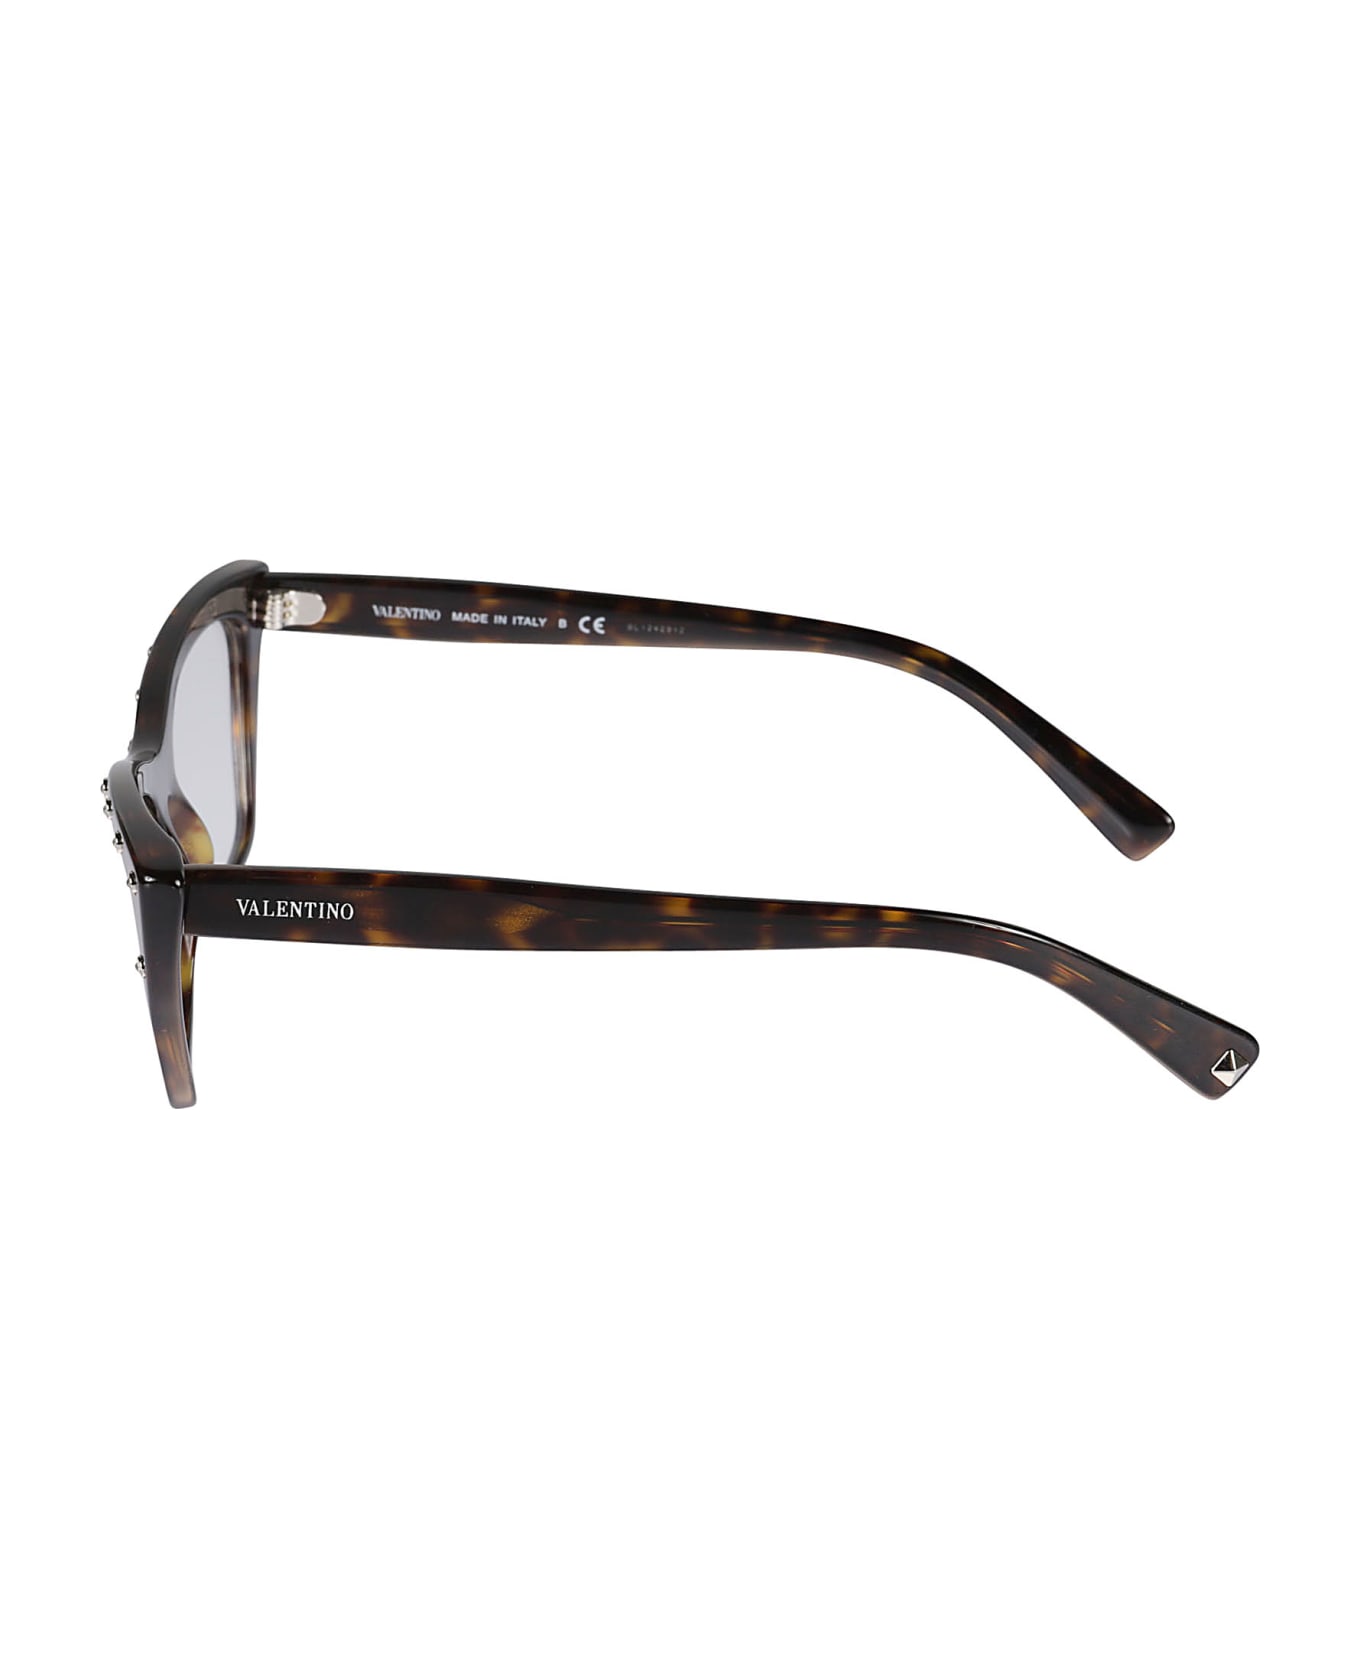 Valentino Eyewear Vista5002 Glasses - 5002